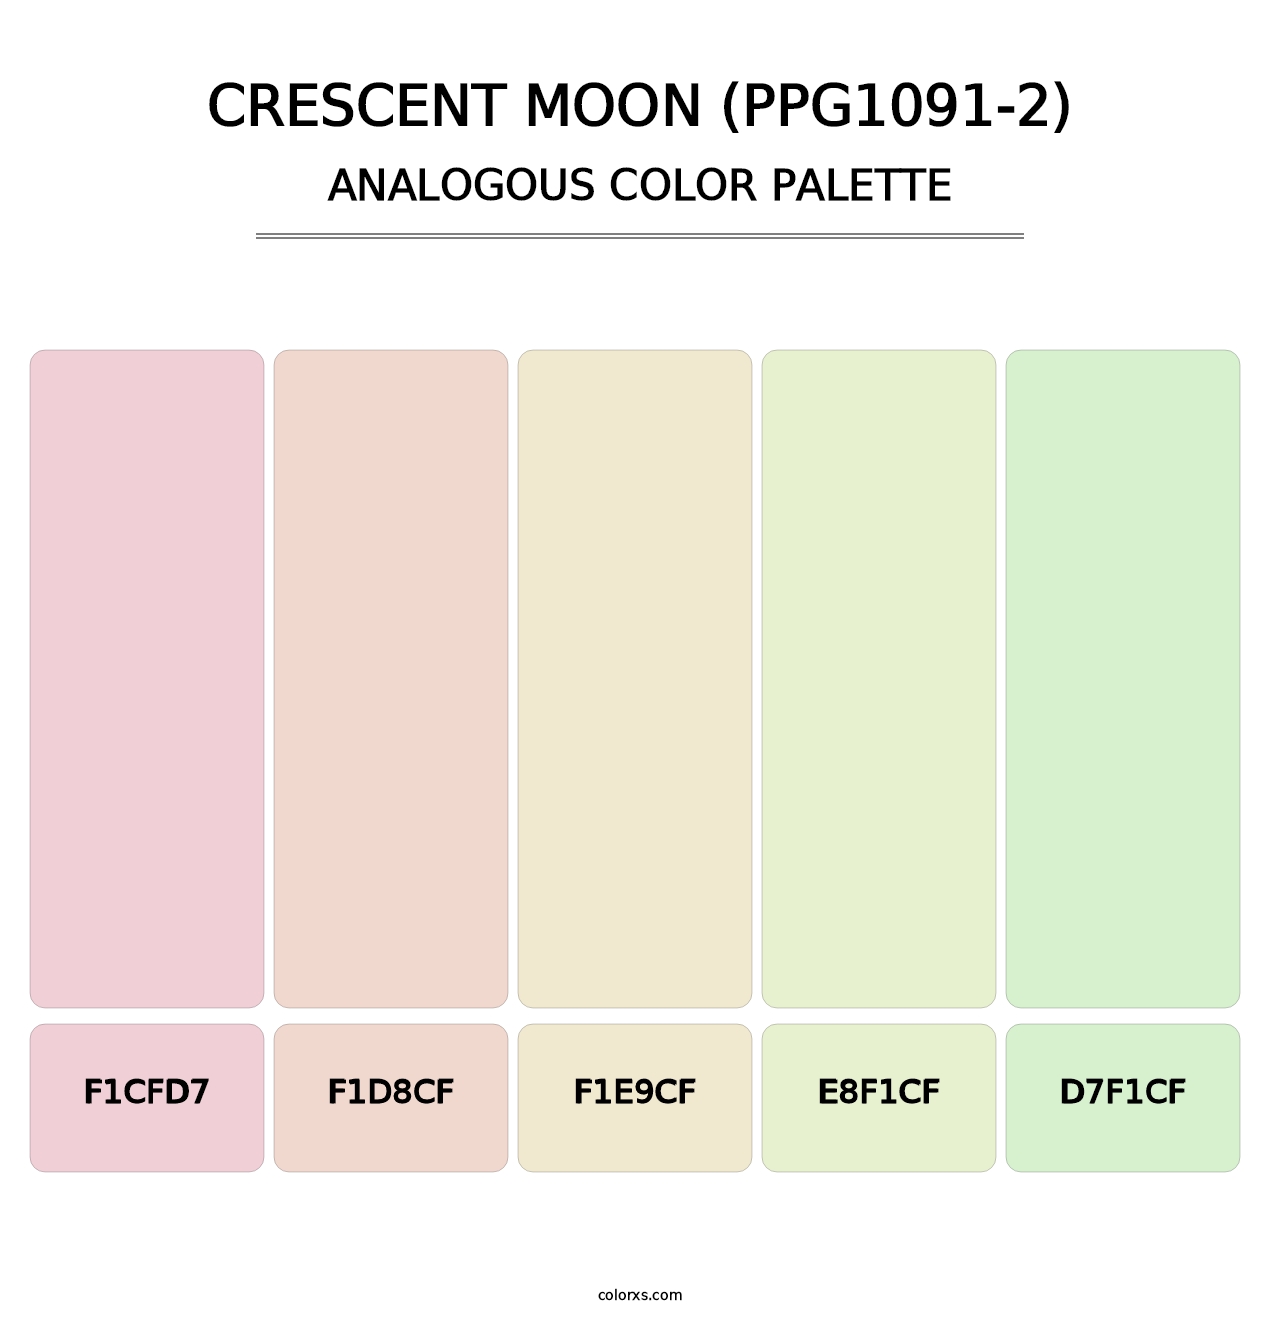 Crescent Moon (PPG1091-2) - Analogous Color Palette